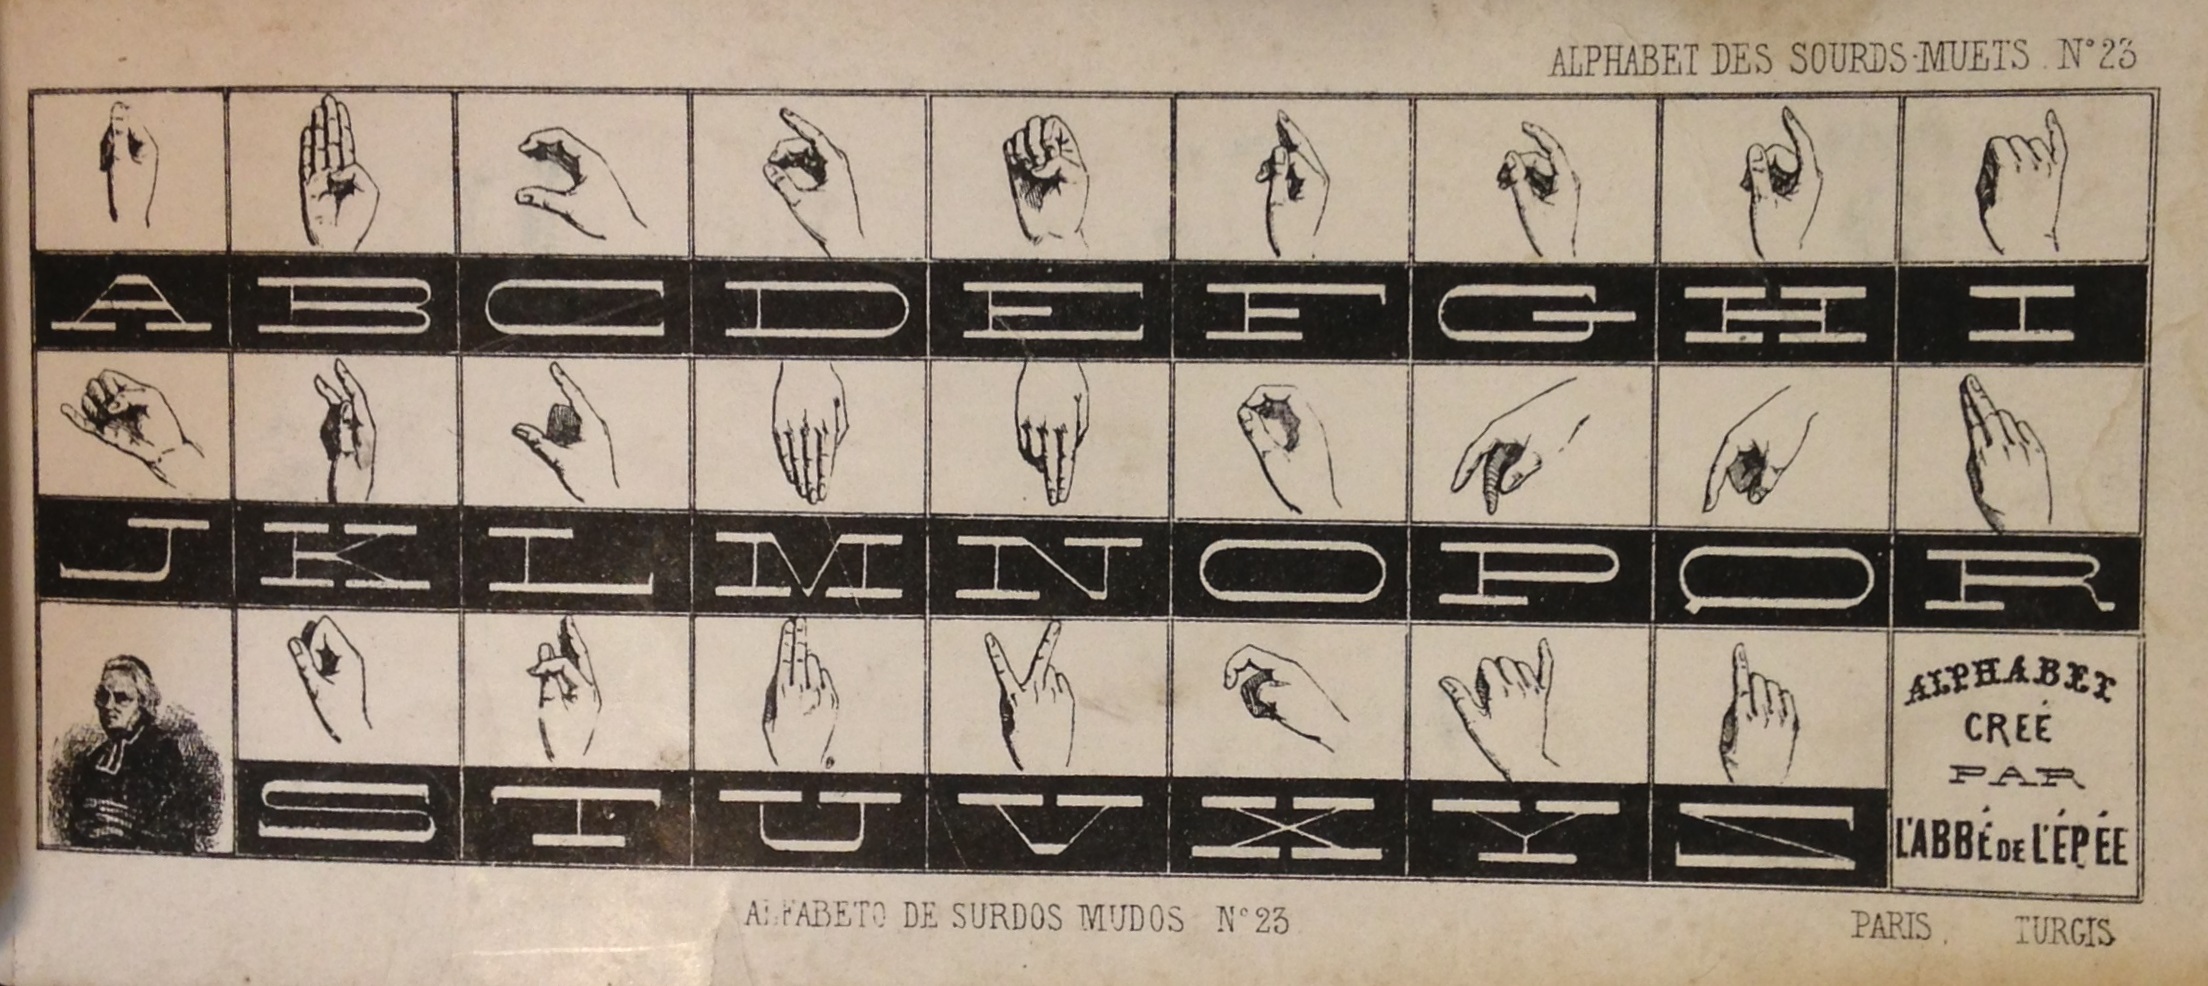 A manual alphabet from a collection of ornamental alphabets, Recueil d'alphabets, dedié aux artistes (Paris & New York: L. Turgis jeune, [ca. 1845?].  (NK3600 .B65 1845)